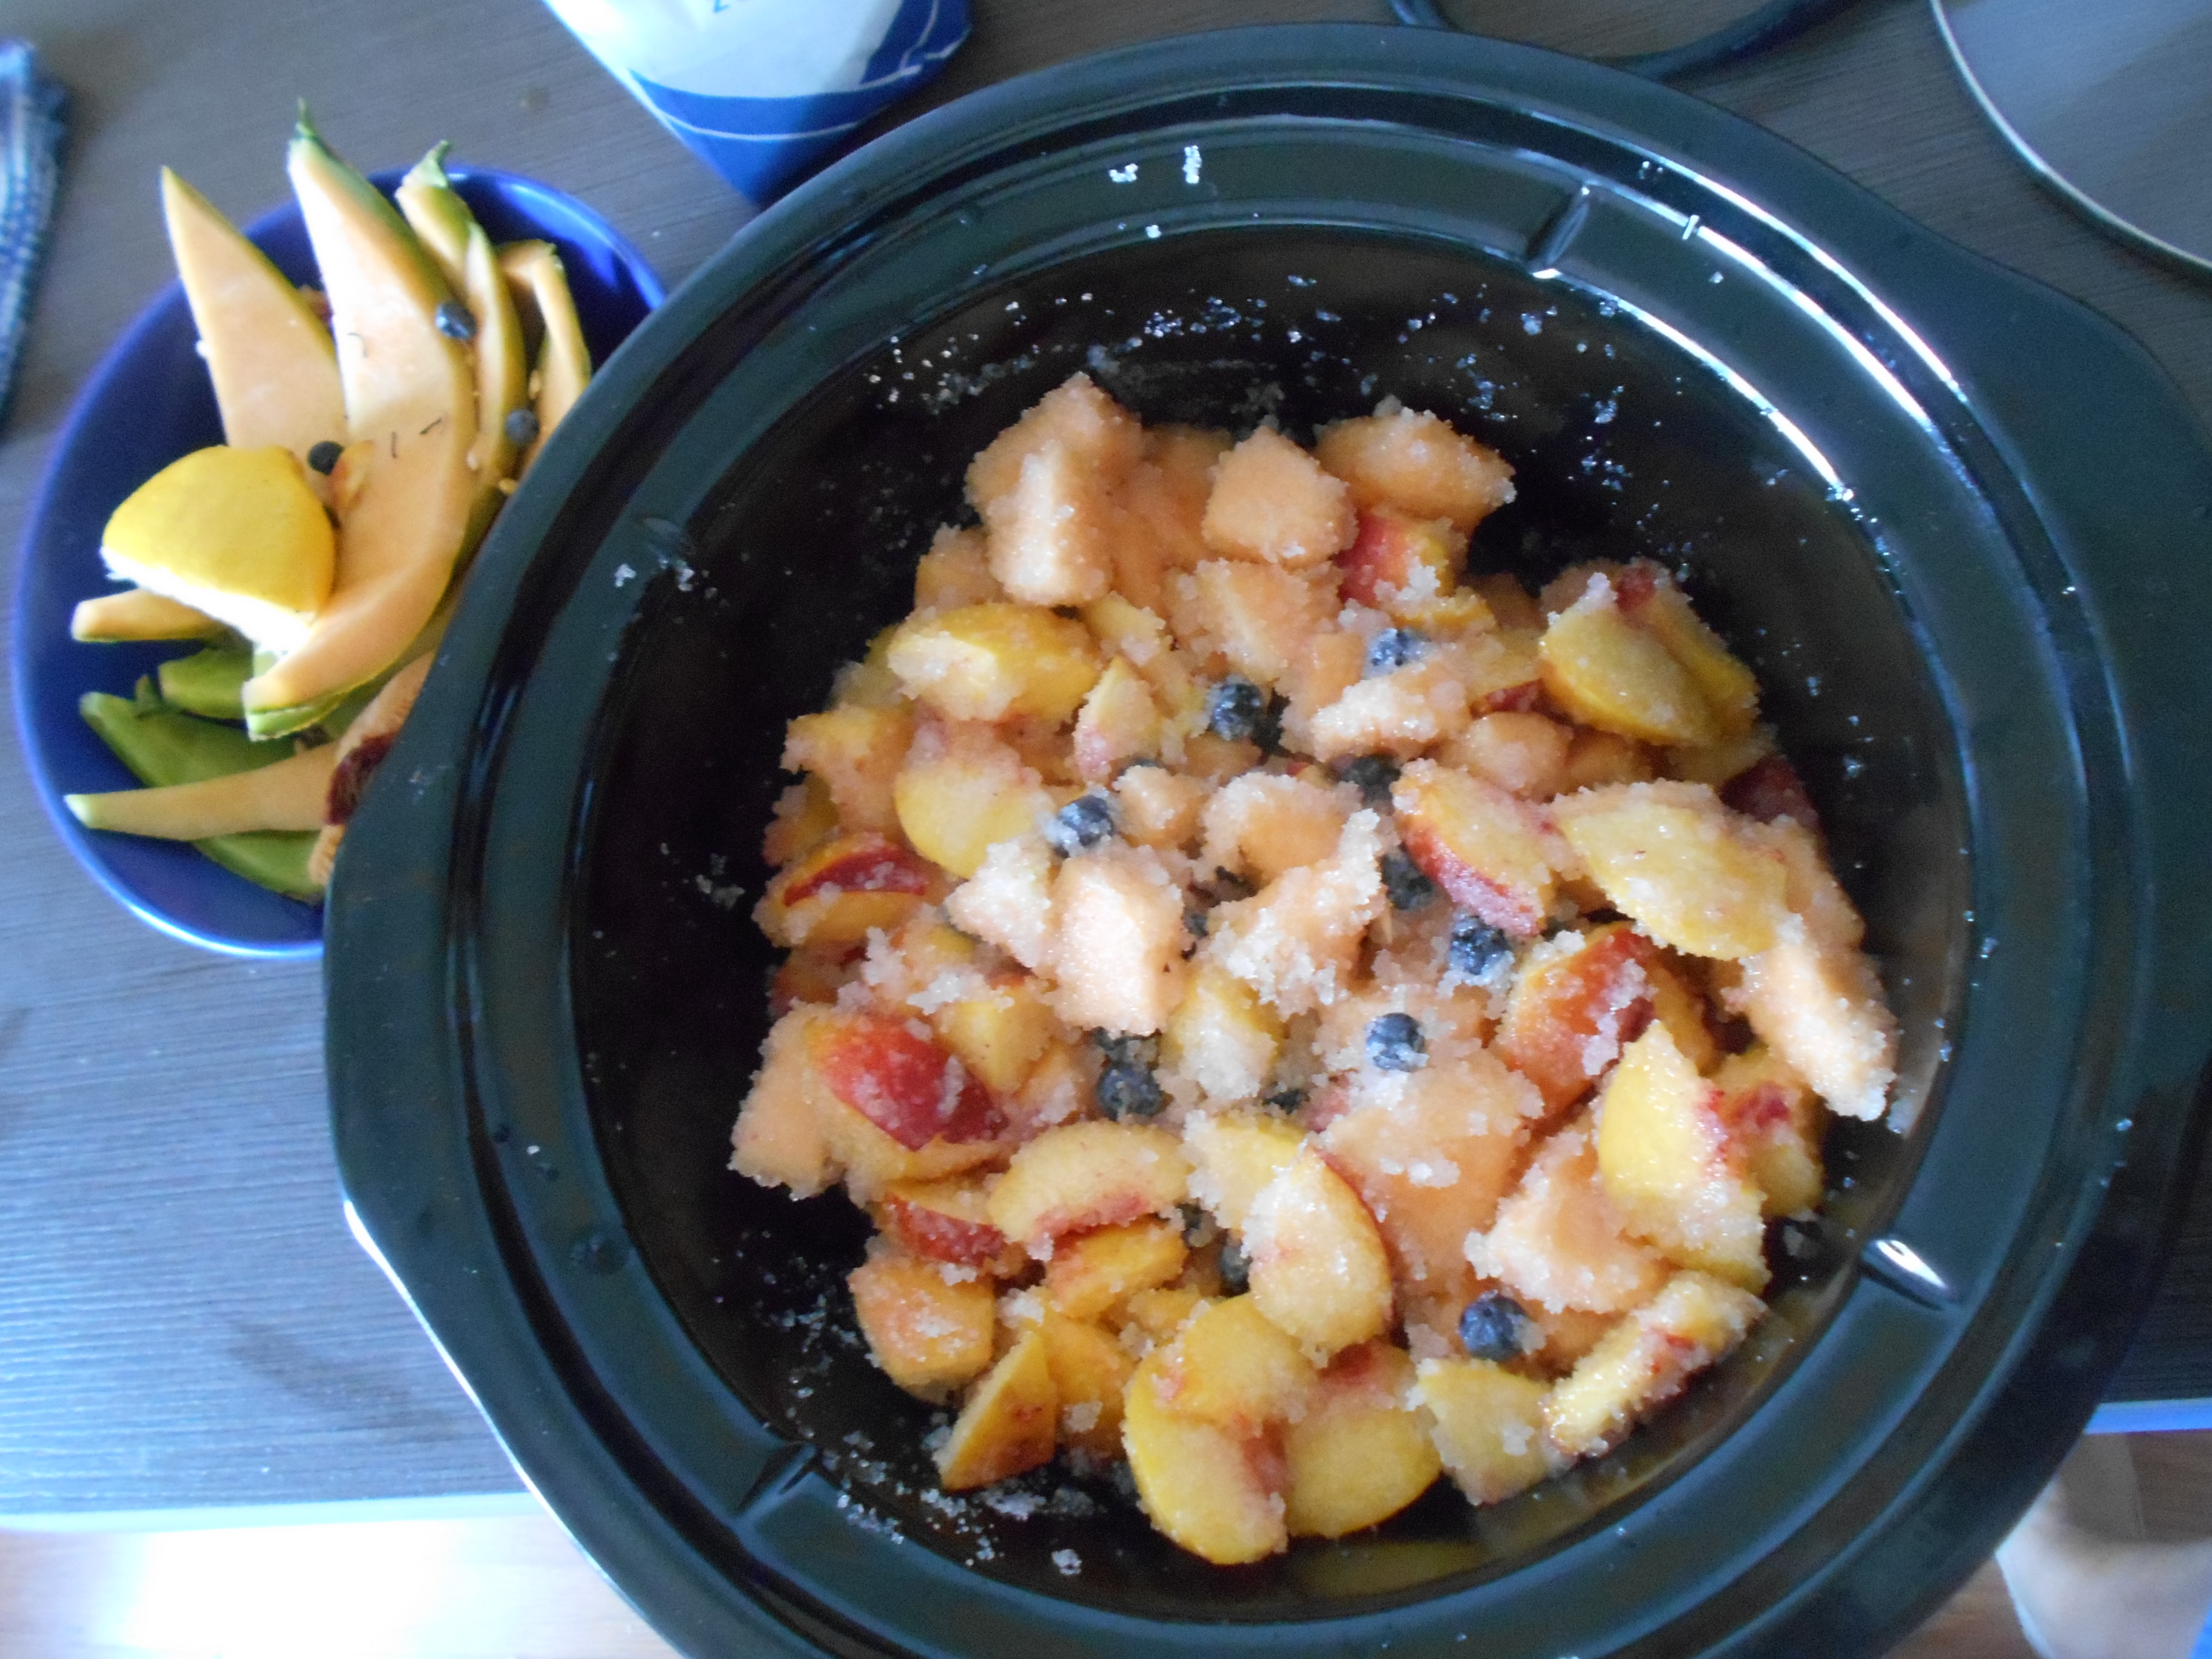 Dulceata cu pepene galben, piersici, afine si nuci la slow cooker Crock-Pot